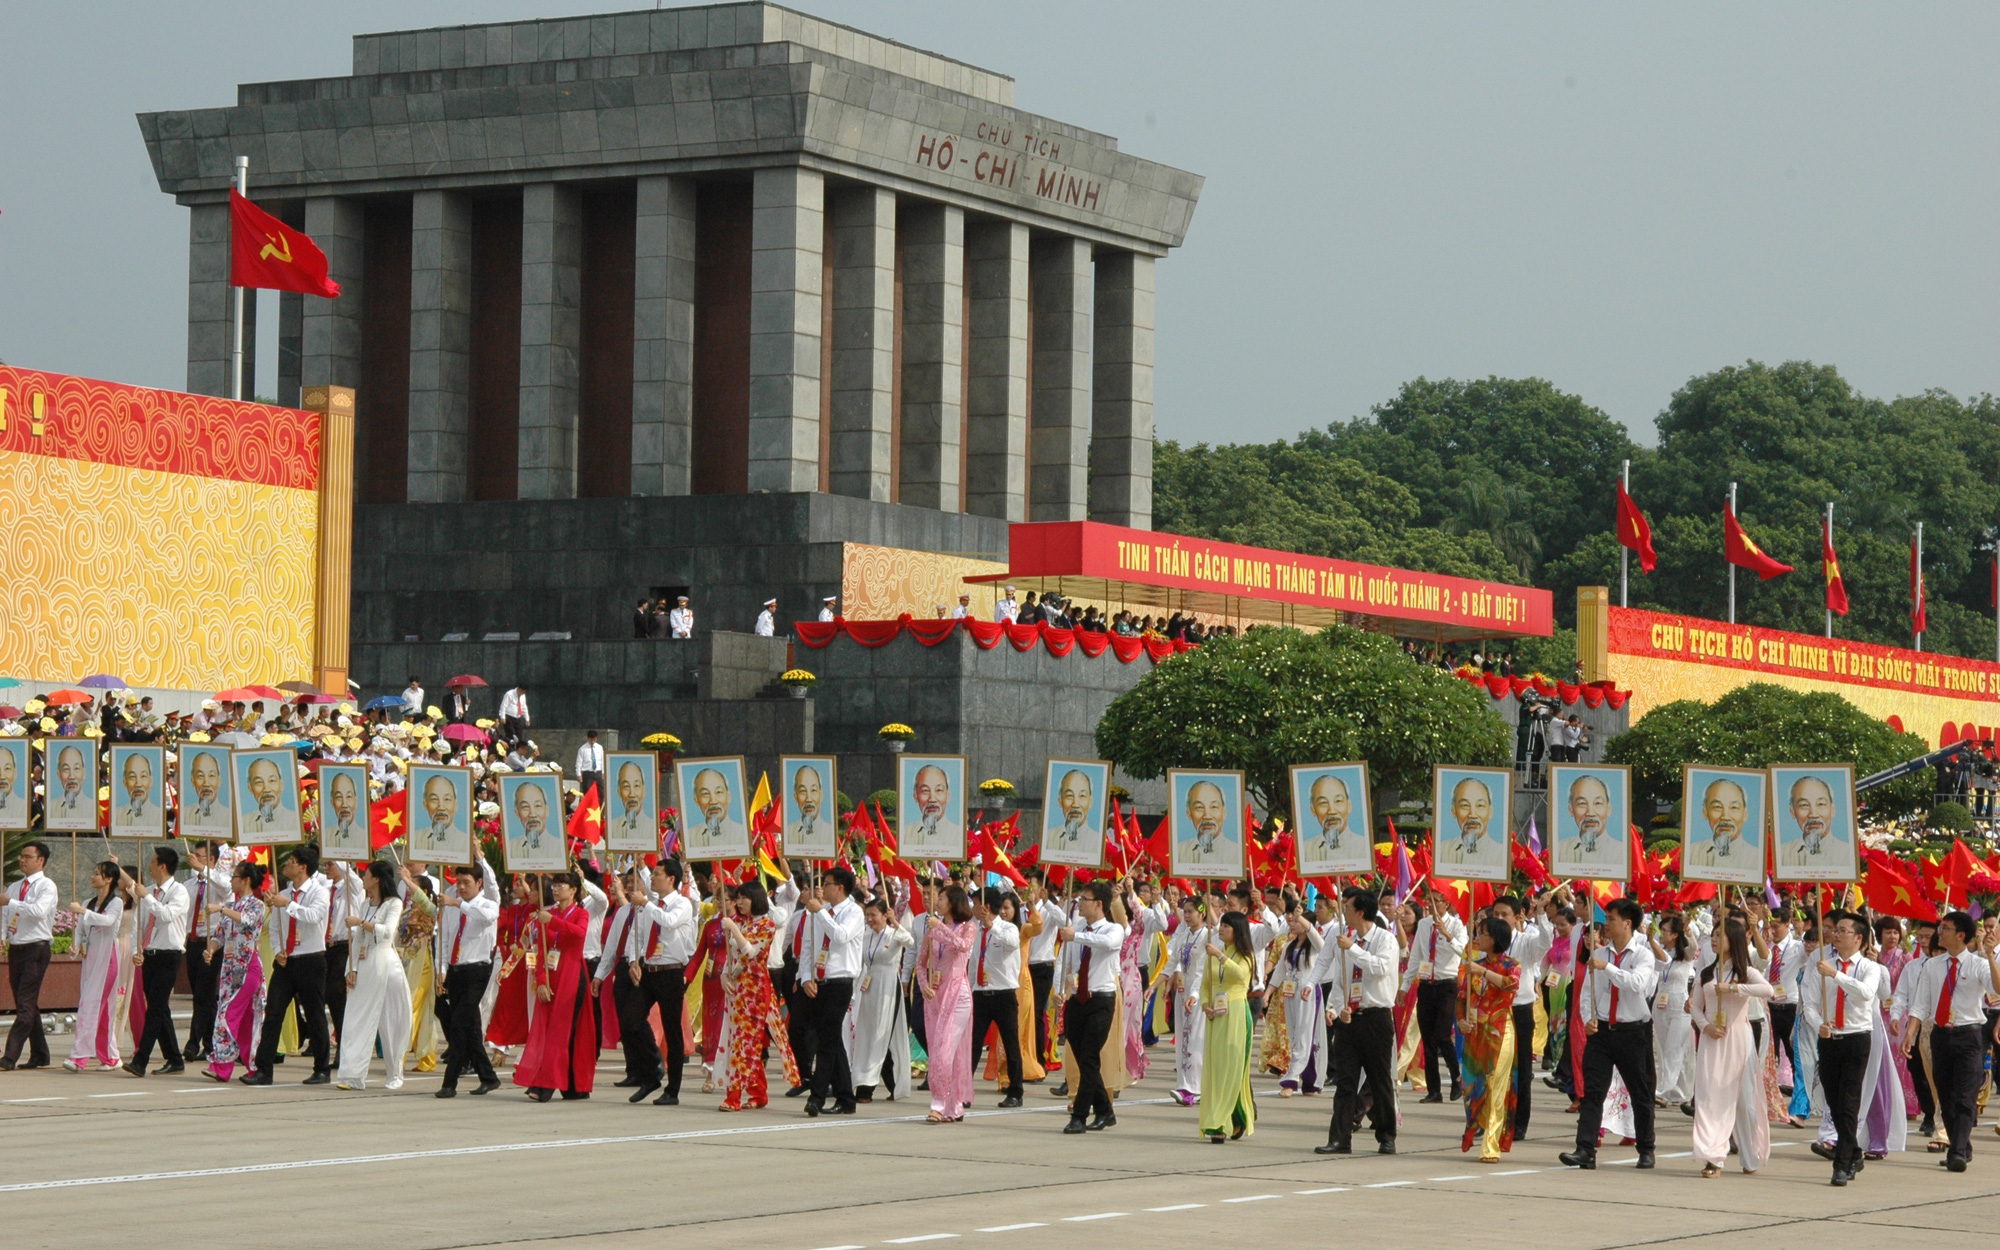 Bồi dưỡng đạo đức cách mạng theo Di chúc Chủ tịch Hồ Chí Minh - Một trong những yêu cầu cấp thiết hàng đầu hiện nay